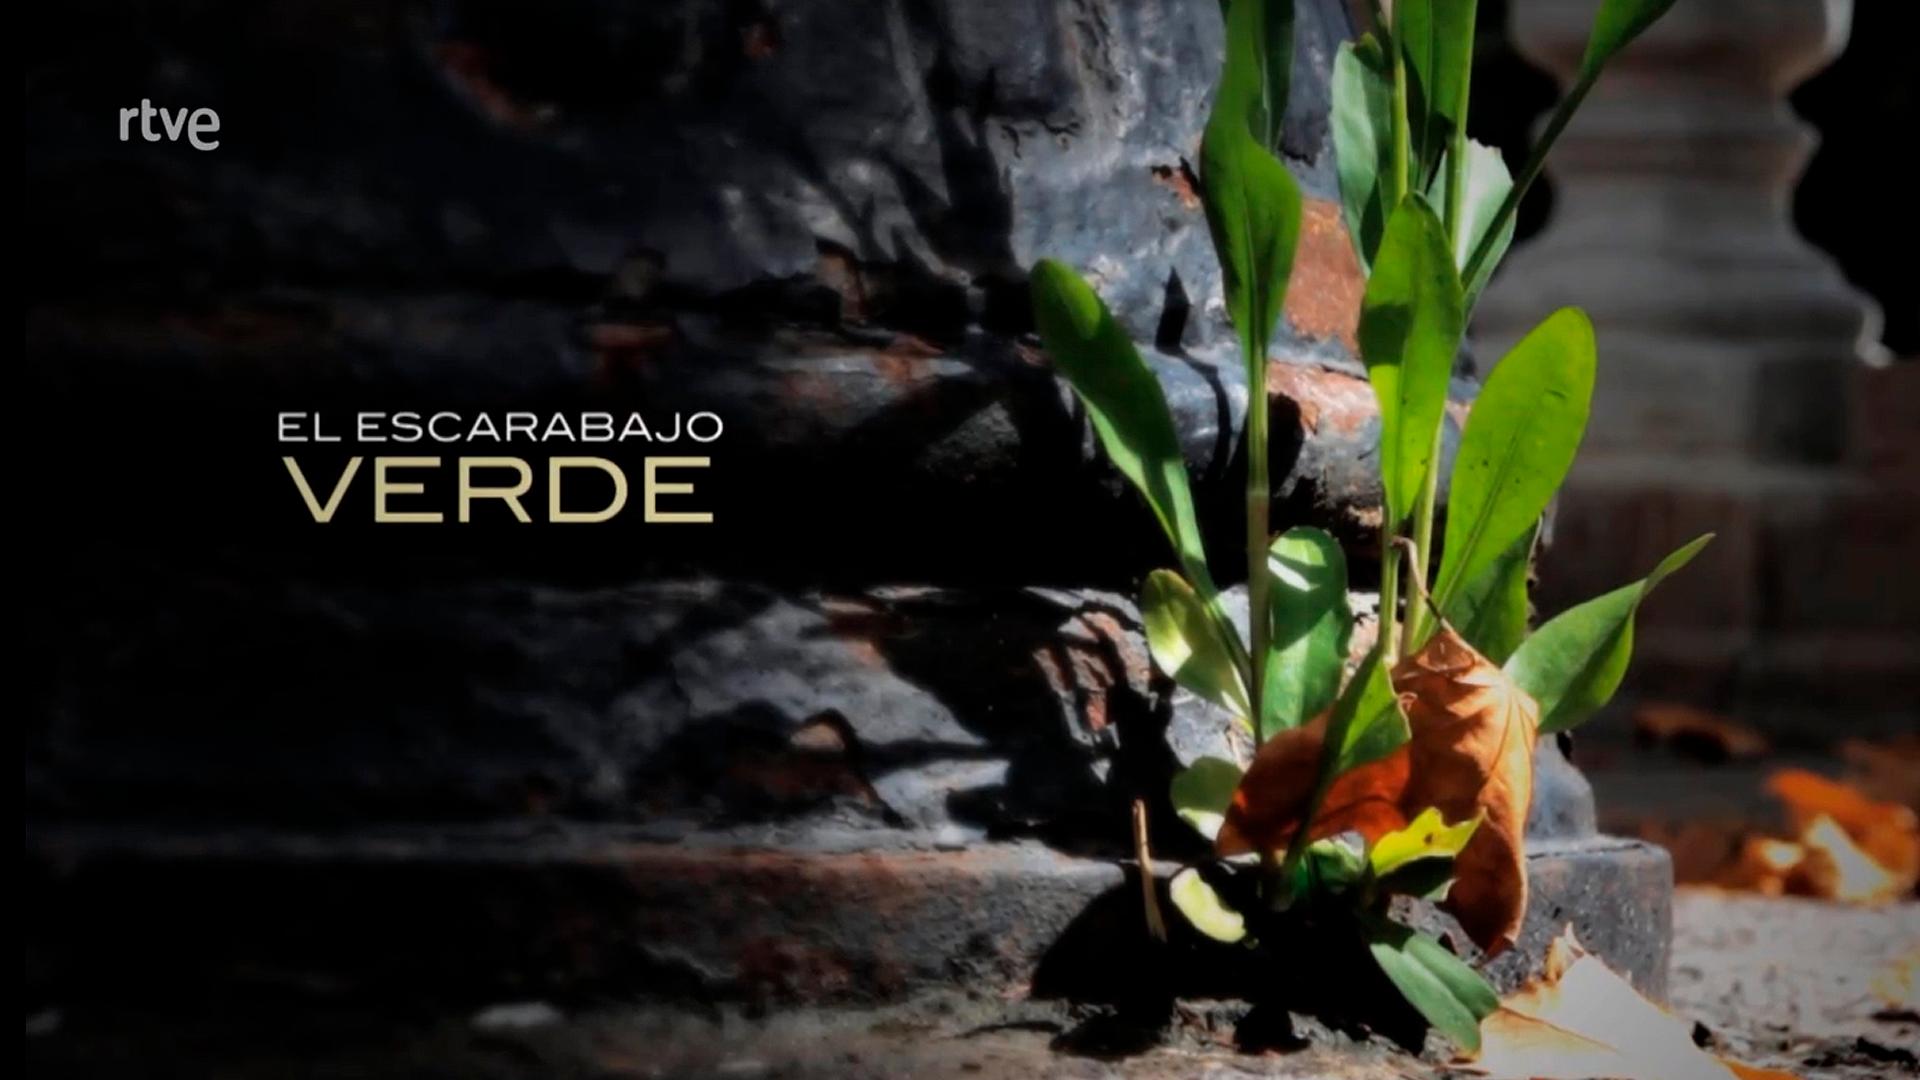 presence-of-caiba-in-the-escarabajo-verde